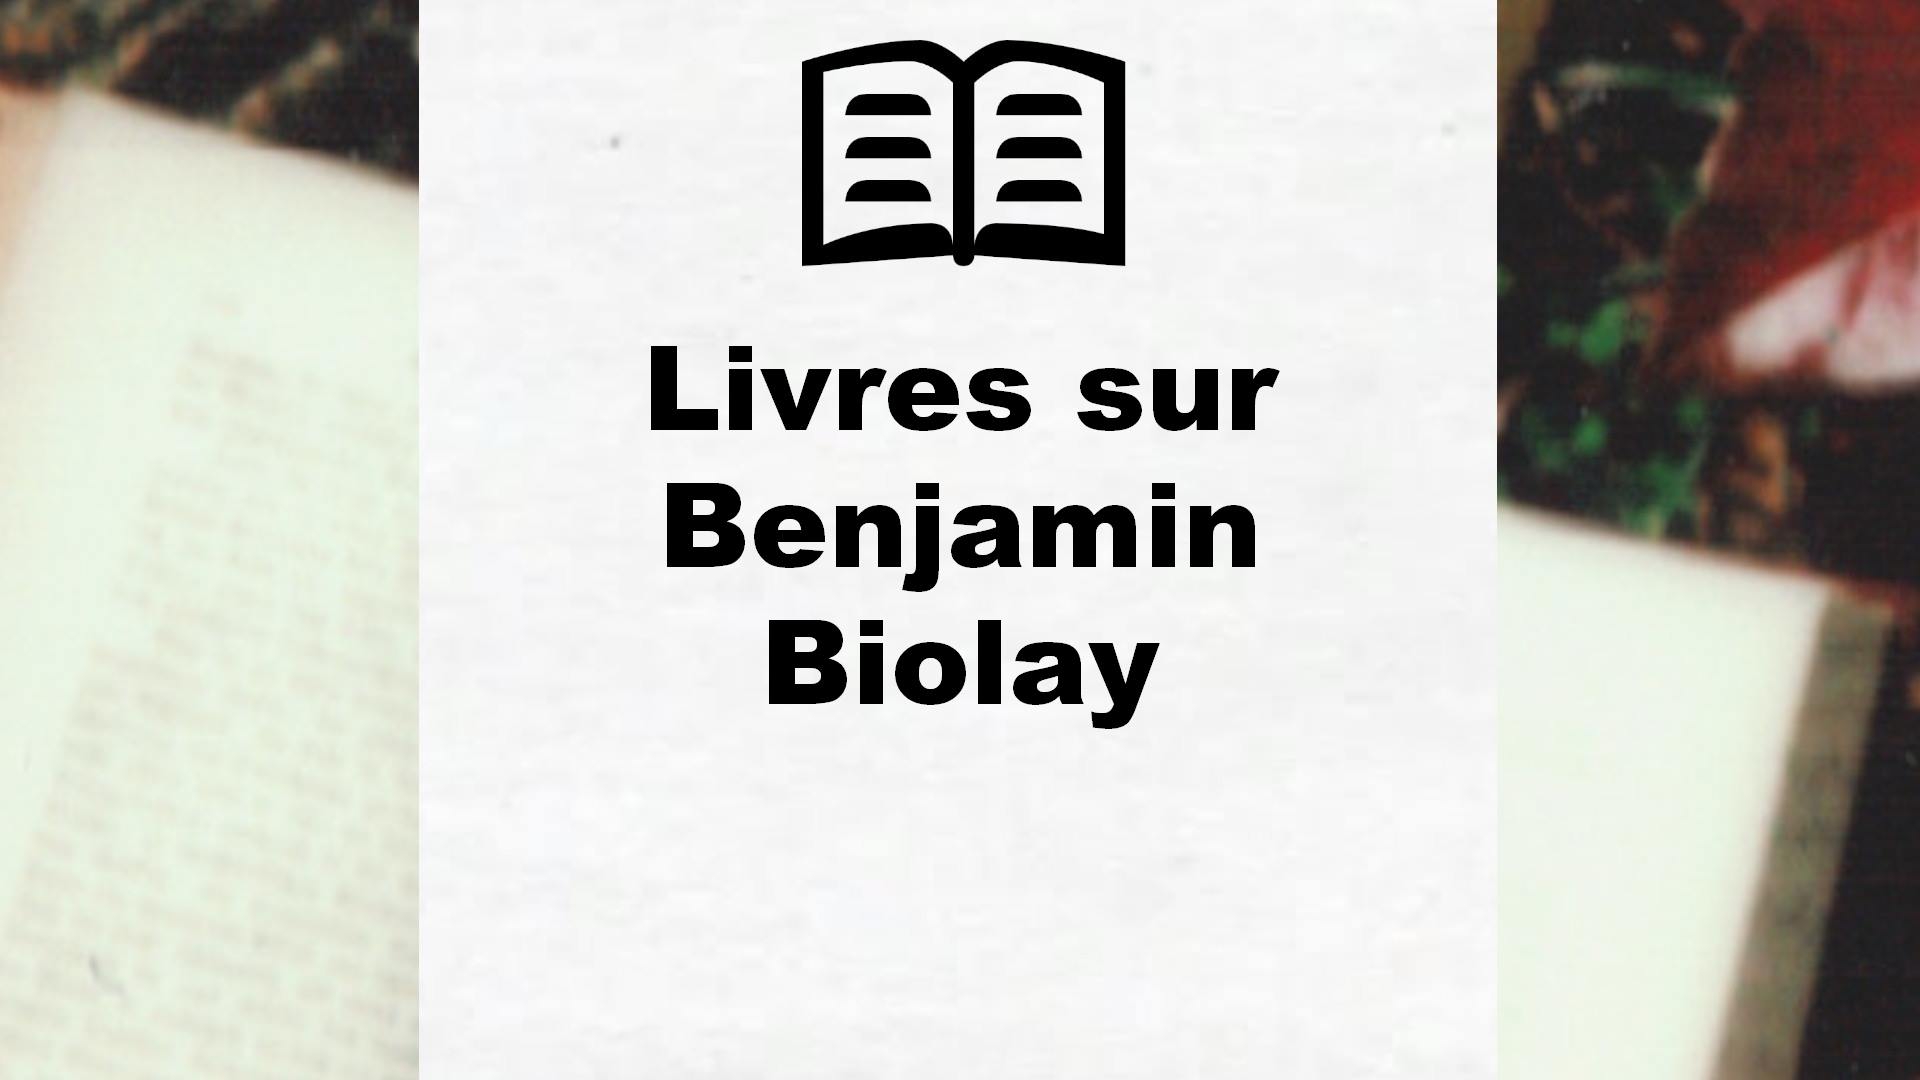 Livres sur Benjamin Biolay